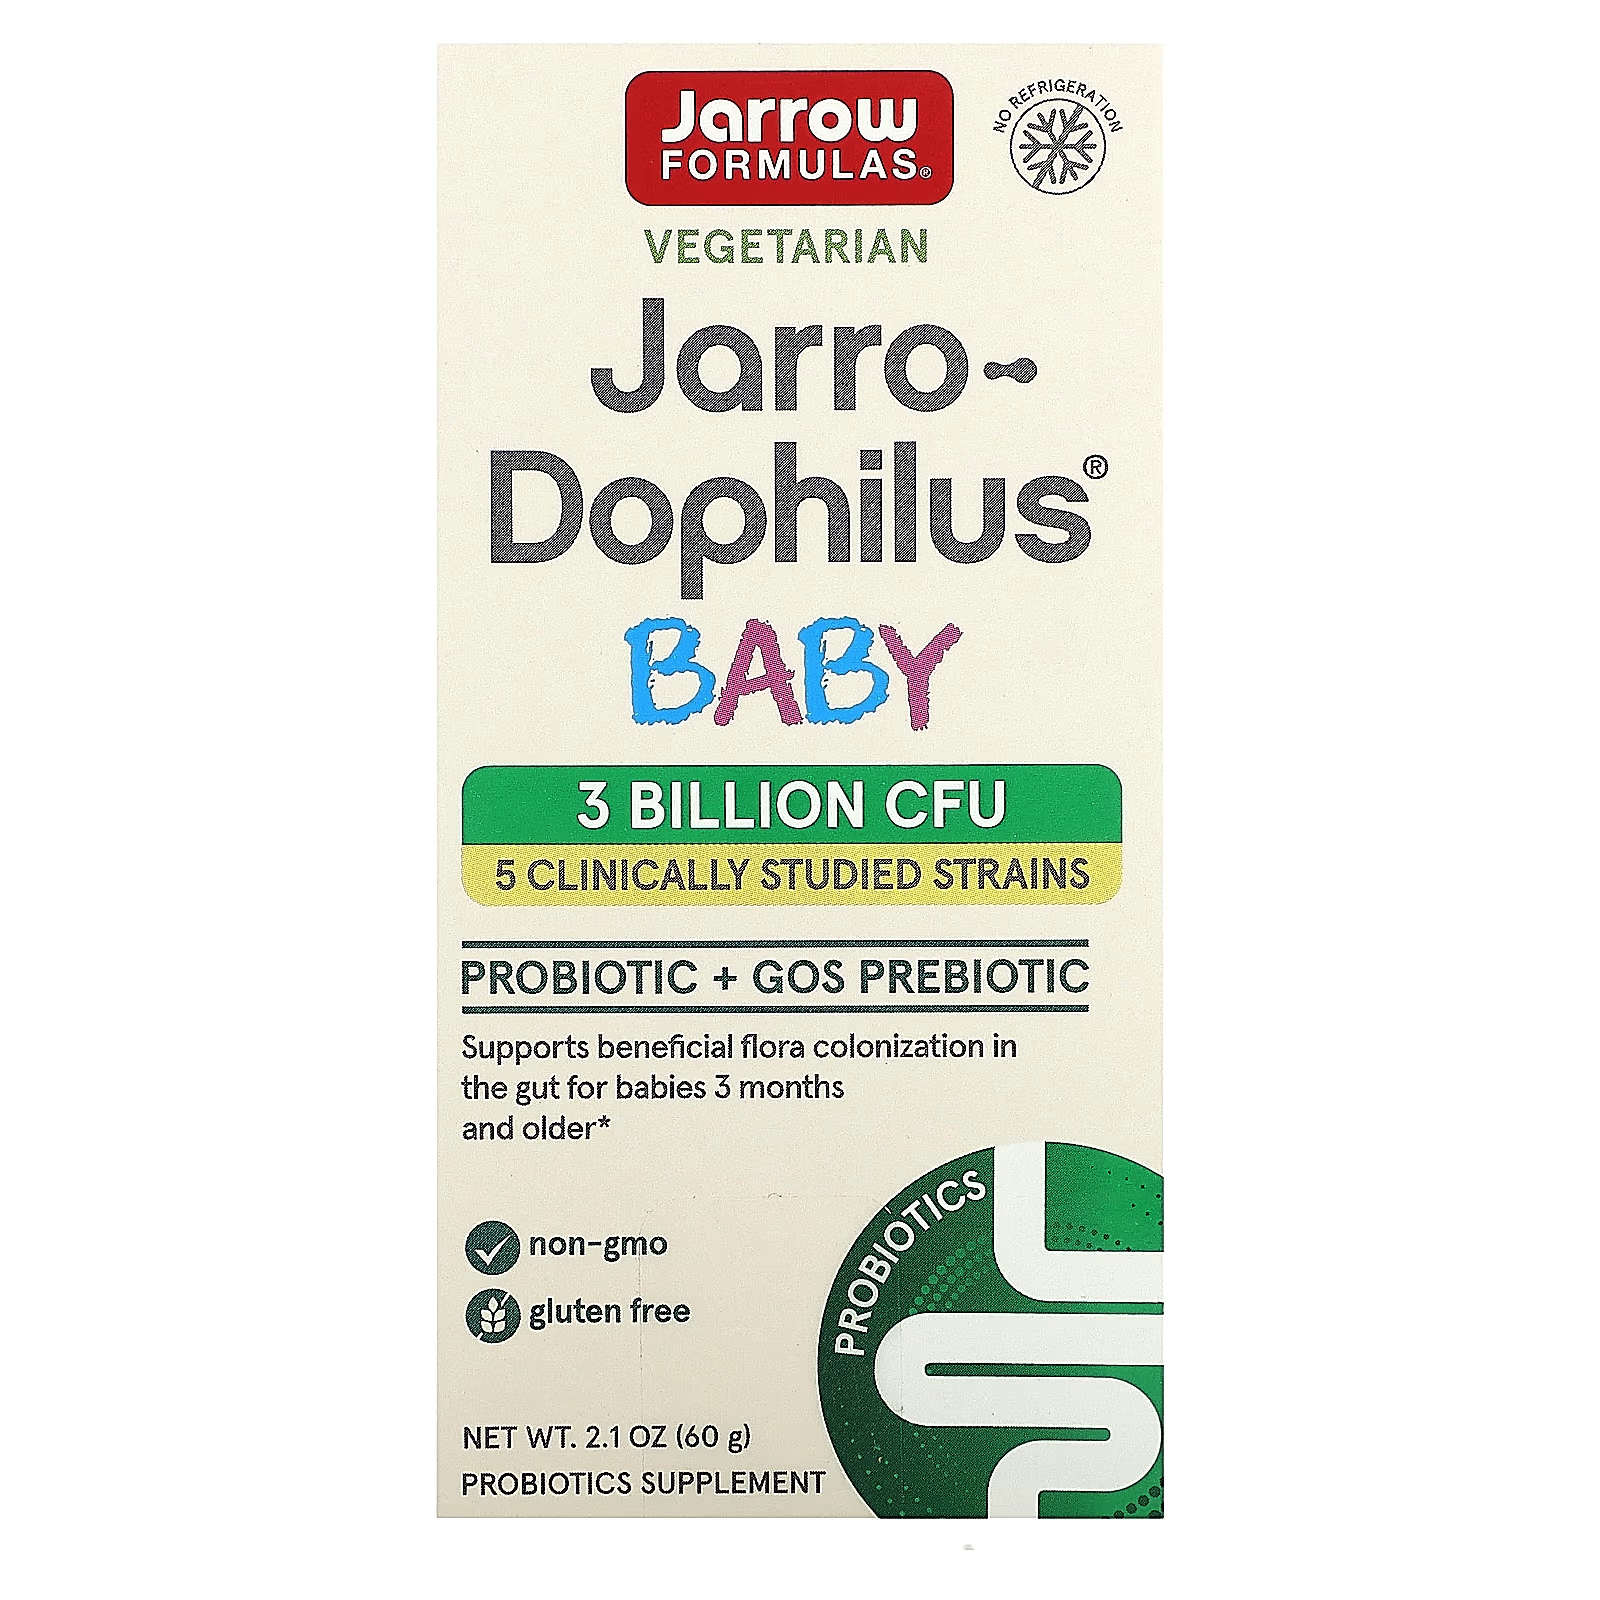 пробиотик для малышей flora 3 миллиарда бактерий 75 гр Пробиотик для детей от 3 месяцев Jarrow Formulas Jarro-Dophilus 3 миллиарда КОЕ, 60 г